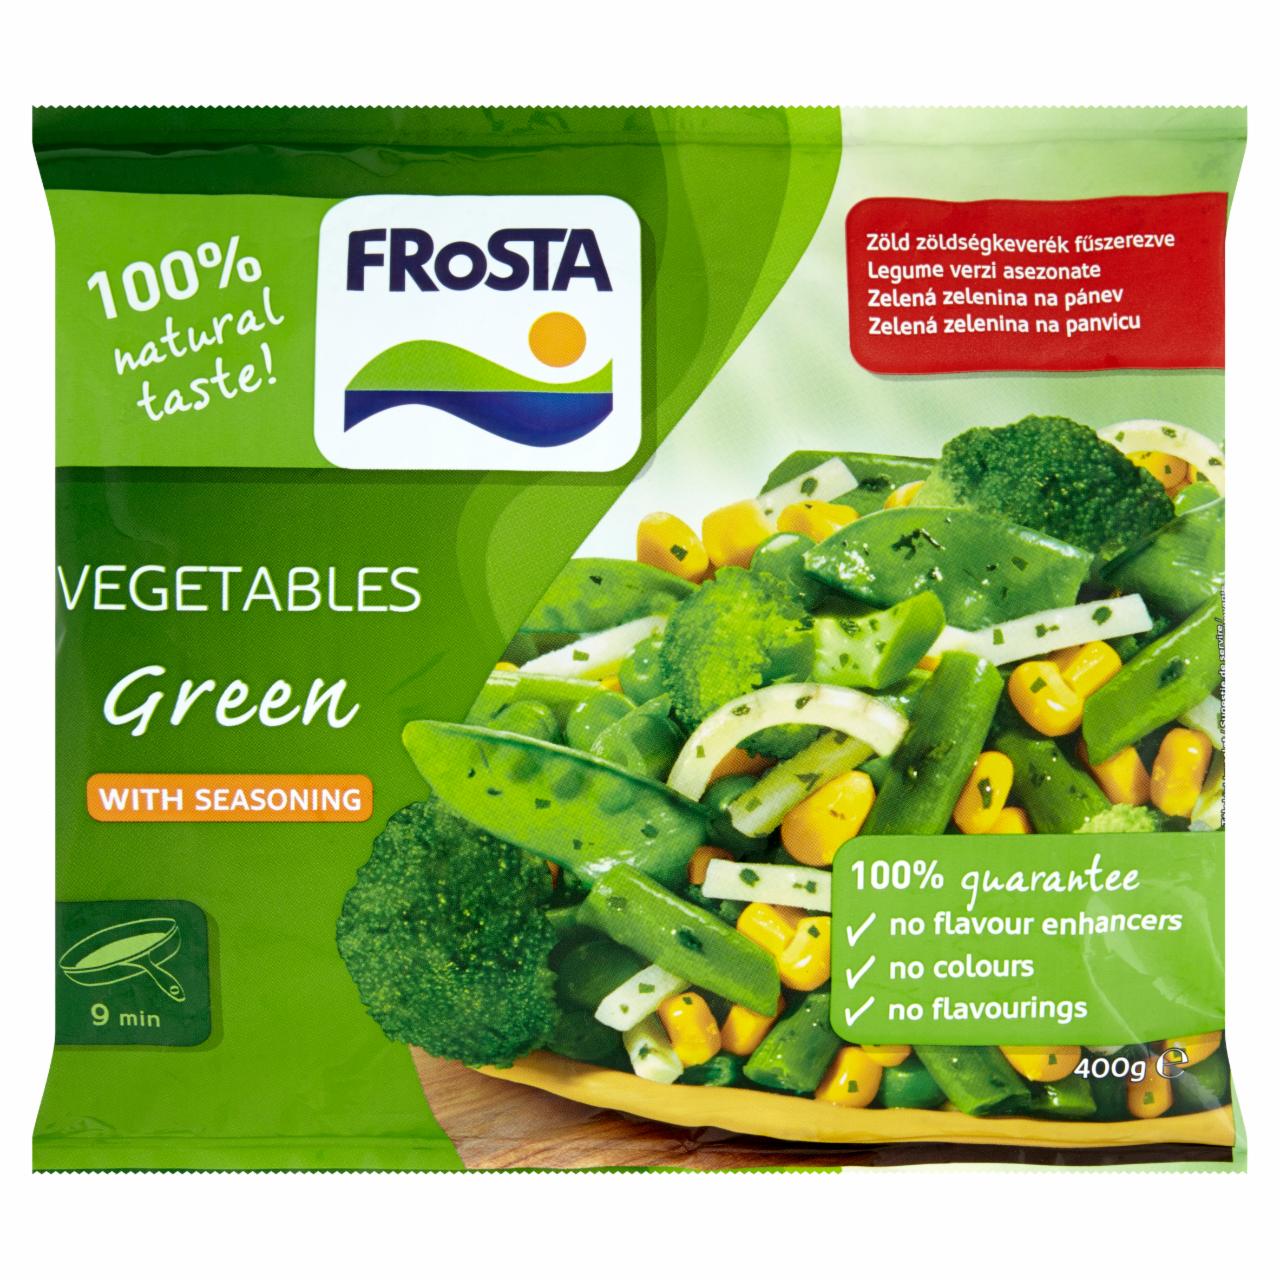 Képek - FRoSTA gyorsfagyasztott zöld zöldségek keveréke petrezselyemmel 400 g